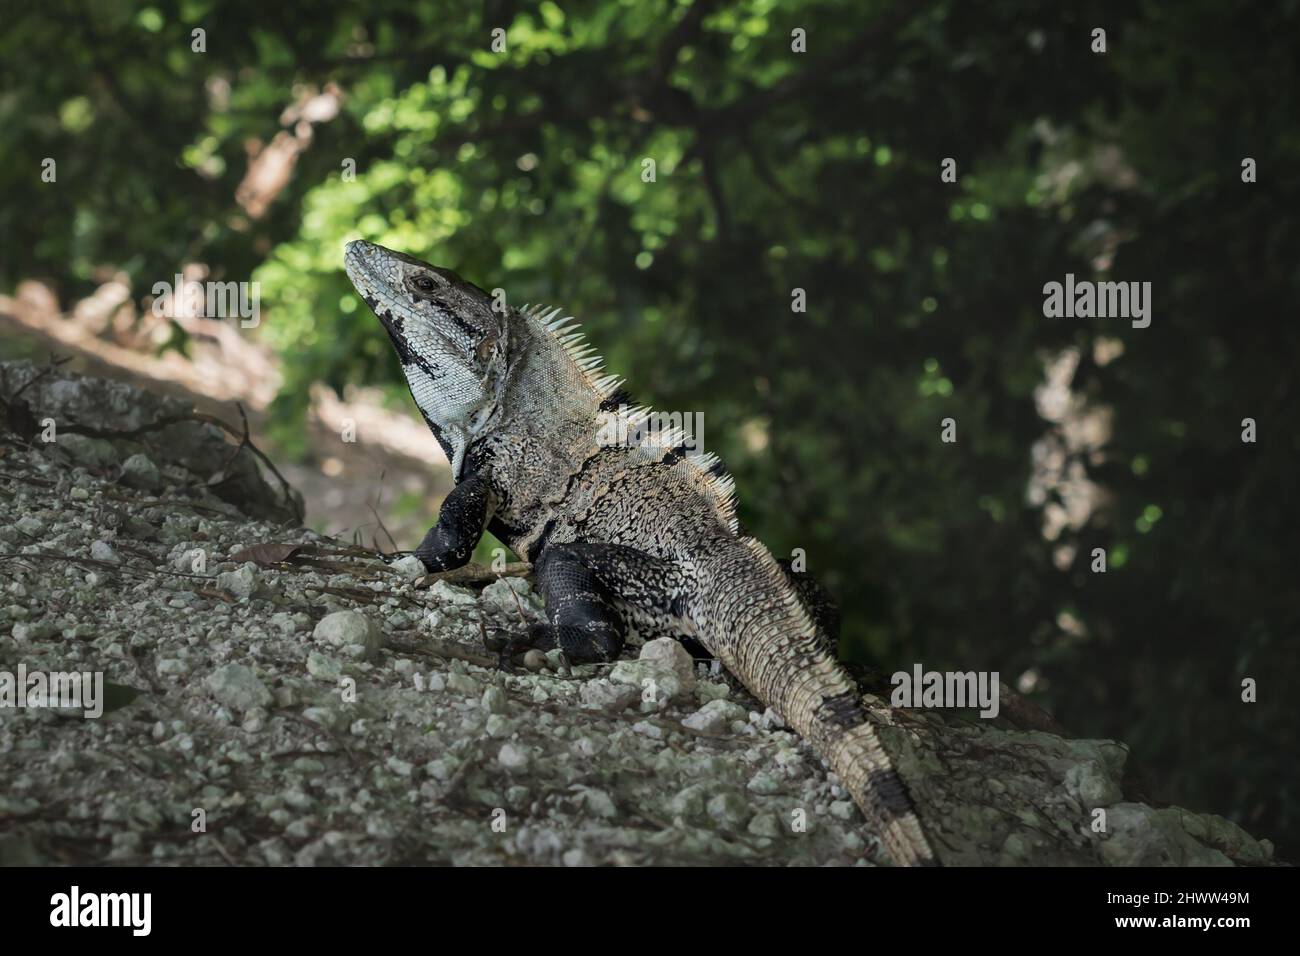 Posing Black spiny-tailed iguana, black iguana, latin name 'Ctenosaura Similis', on stones in tropical forest, Belize Stock Photo